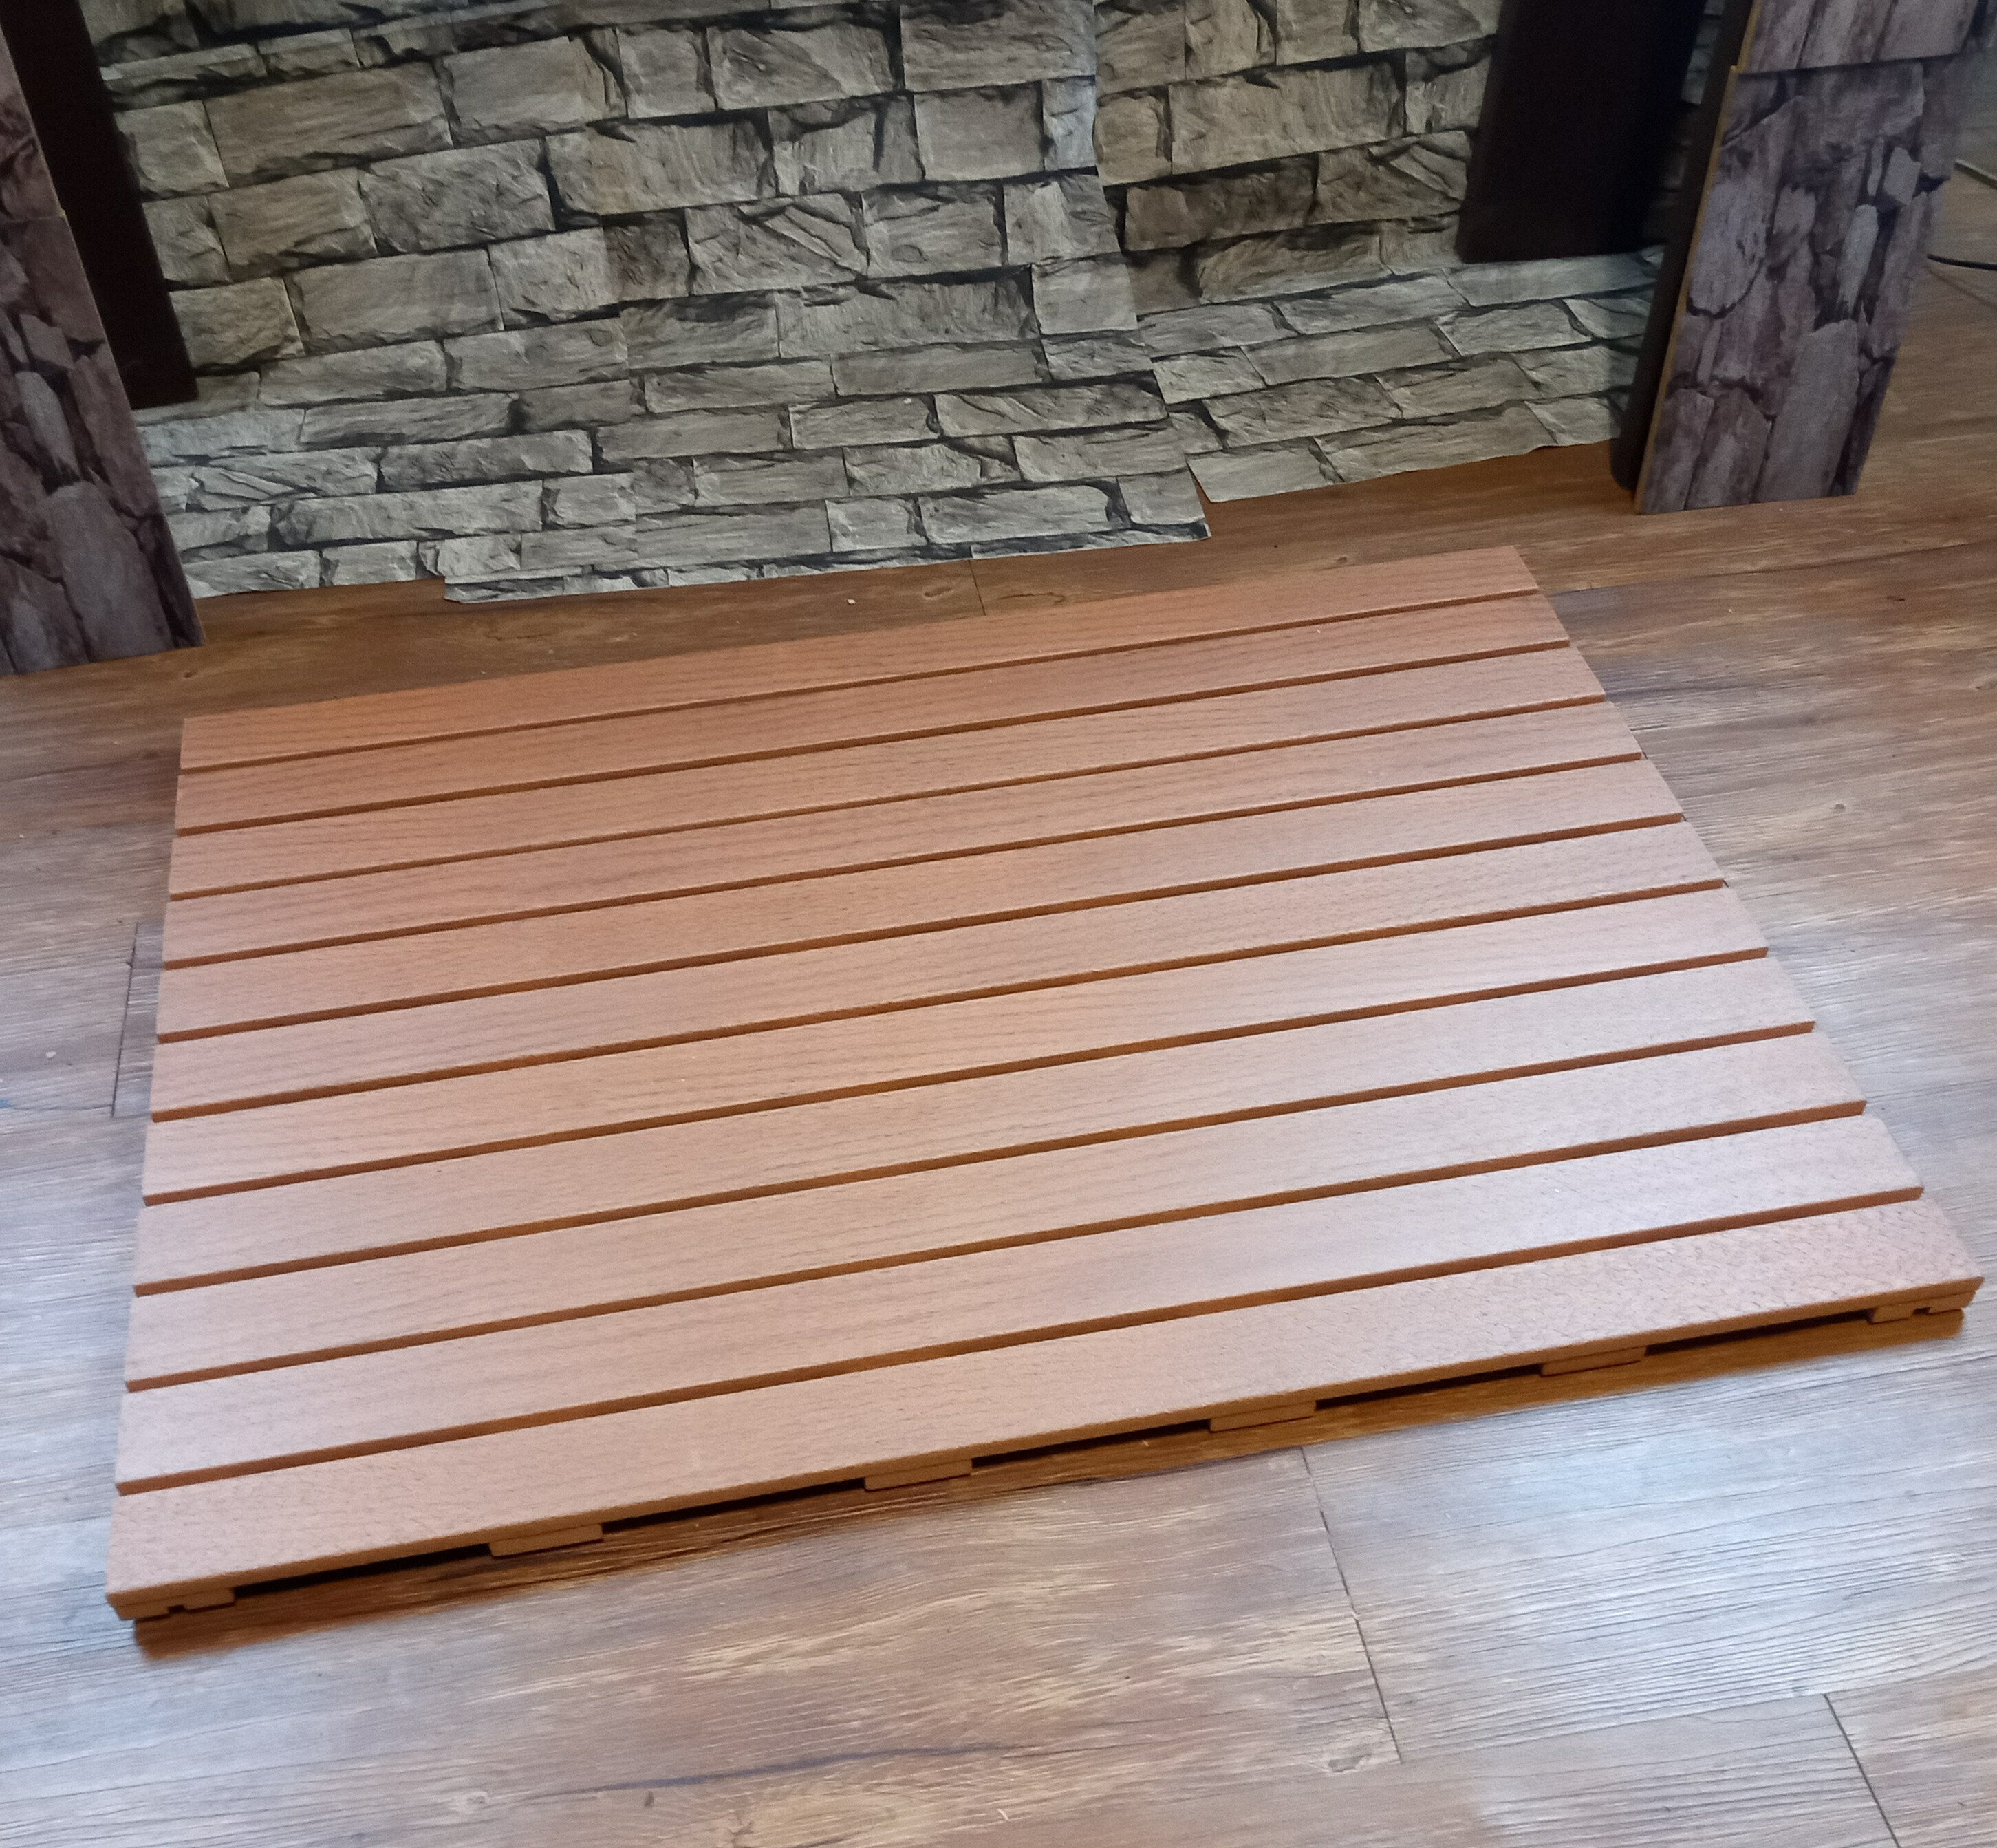 防水防滑浴室踏板(A材90x90x2.4cm)/浴室地板/陽台地板/ 戶外地板/防滑踏墊